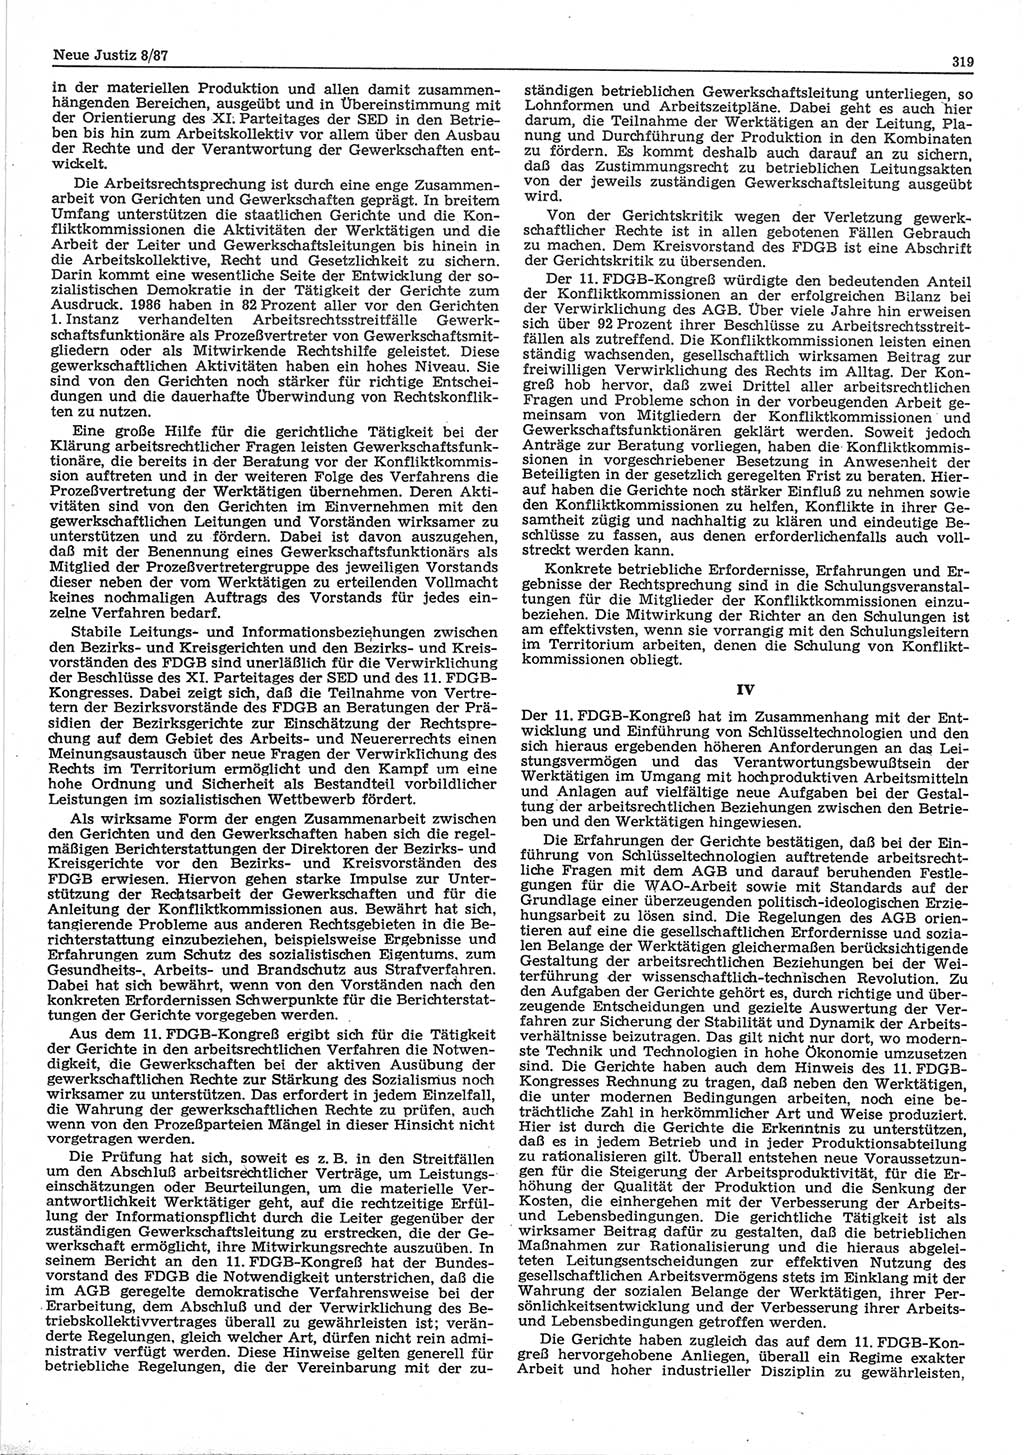 Neue Justiz (NJ), Zeitschrift für sozialistisches Recht und Gesetzlichkeit [Deutsche Demokratische Republik (DDR)], 41. Jahrgang 1987, Seite 319 (NJ DDR 1987, S. 319)